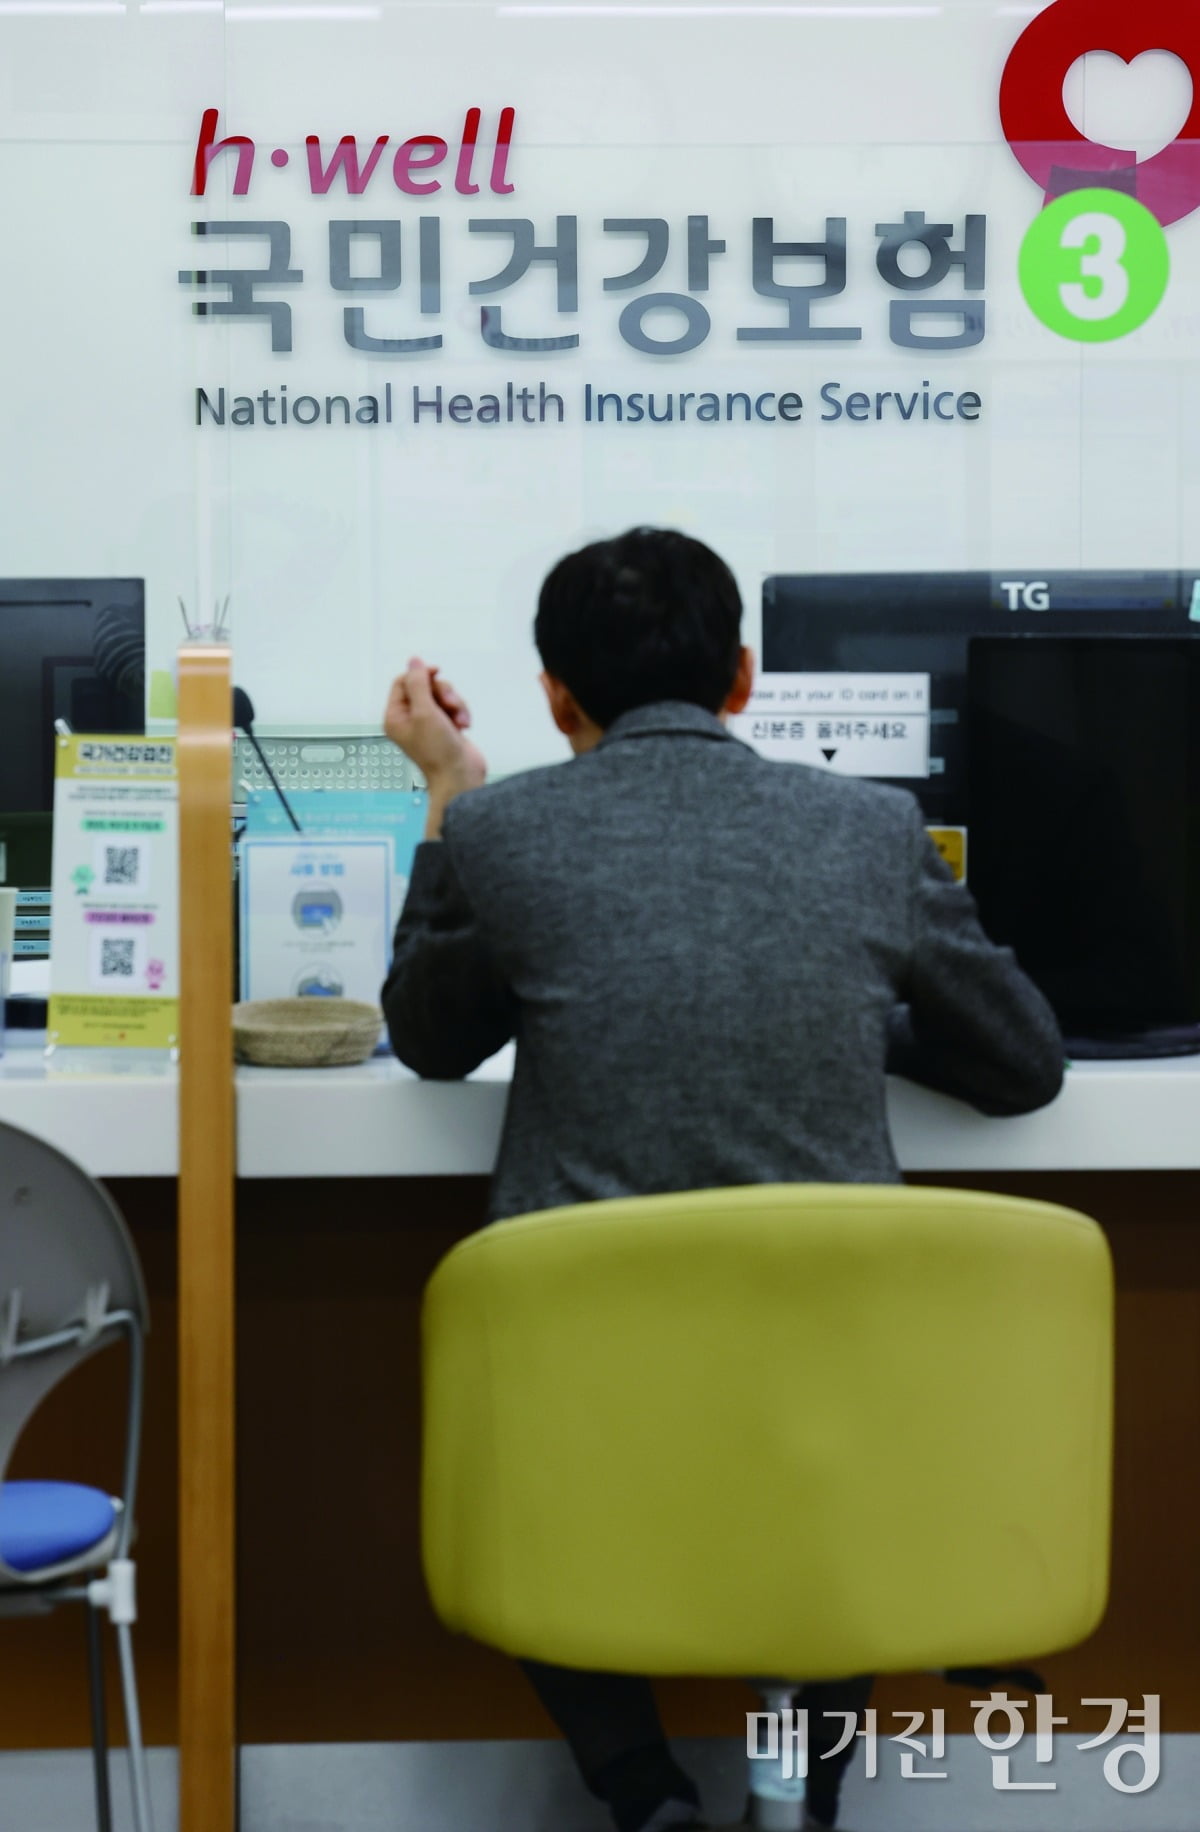 김동엽 미래에셋투자와연금센터 상무, "은퇴 앞둔 직장인의 건강보험료 대처법"